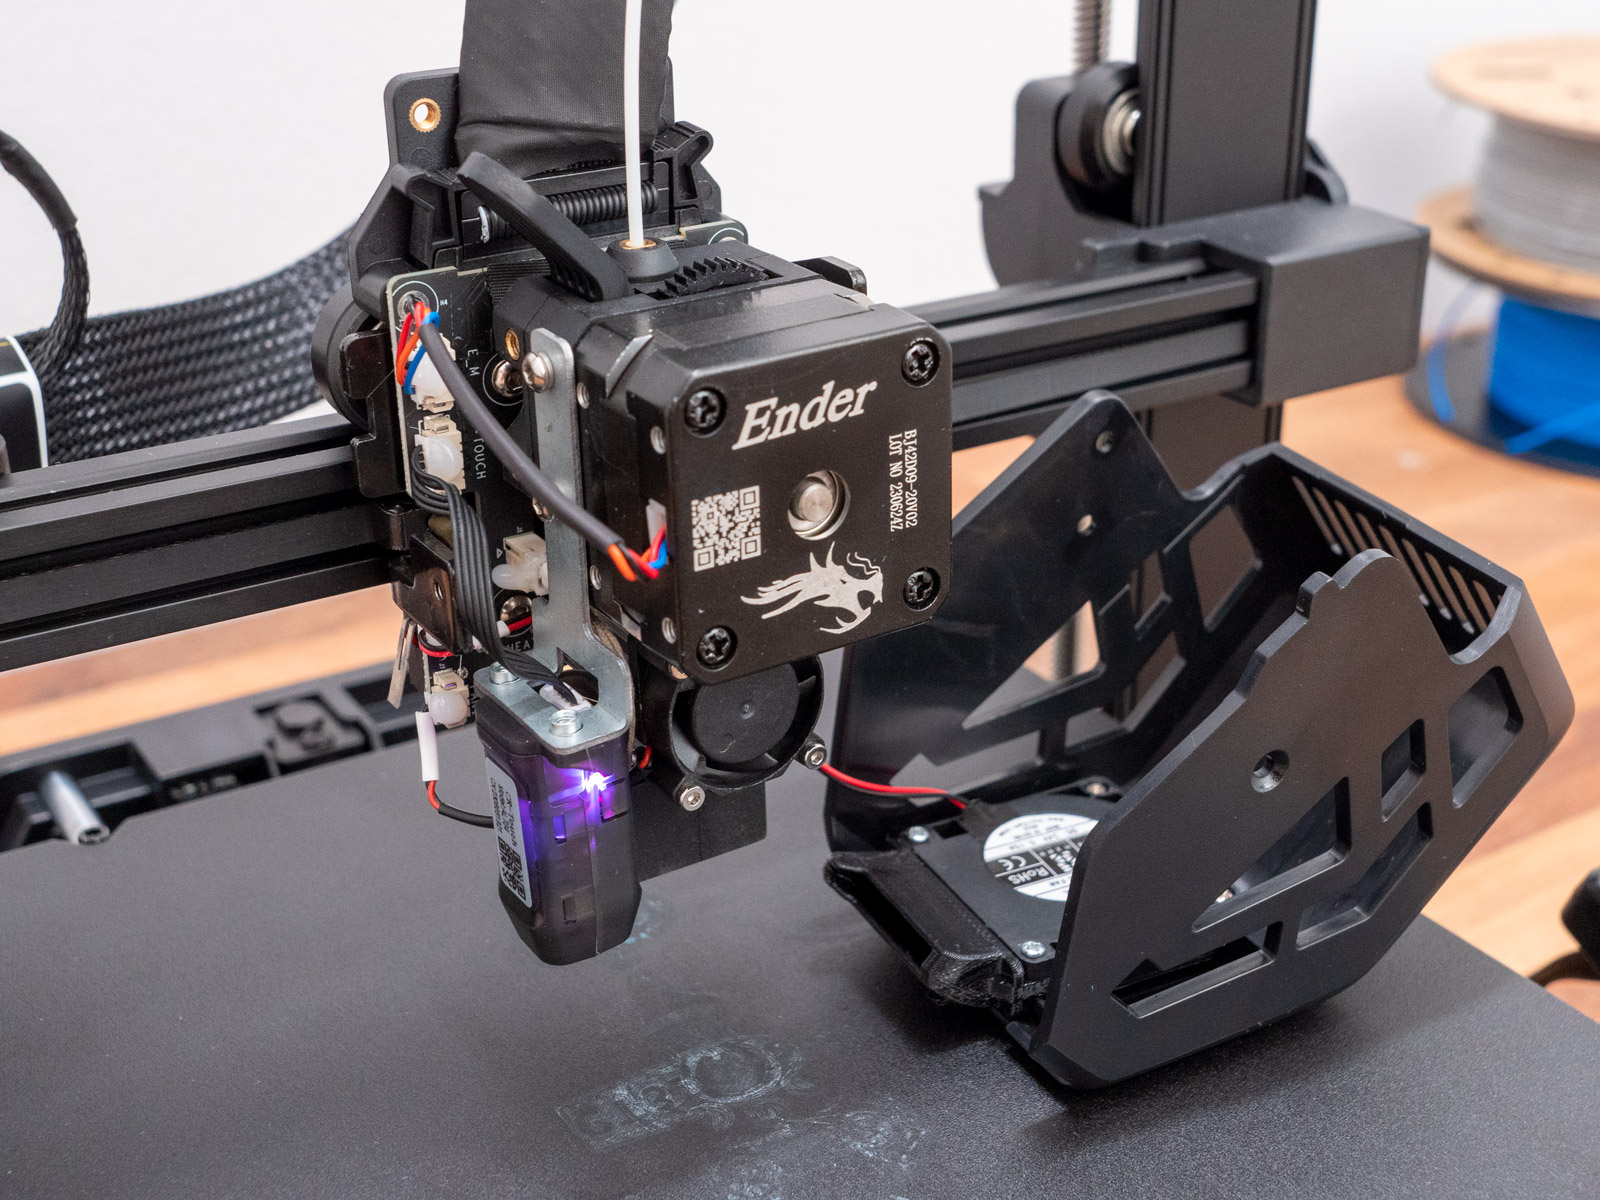 Official Creality Ender 3 V3 SE 3D Printer, Upgraded Ender 3